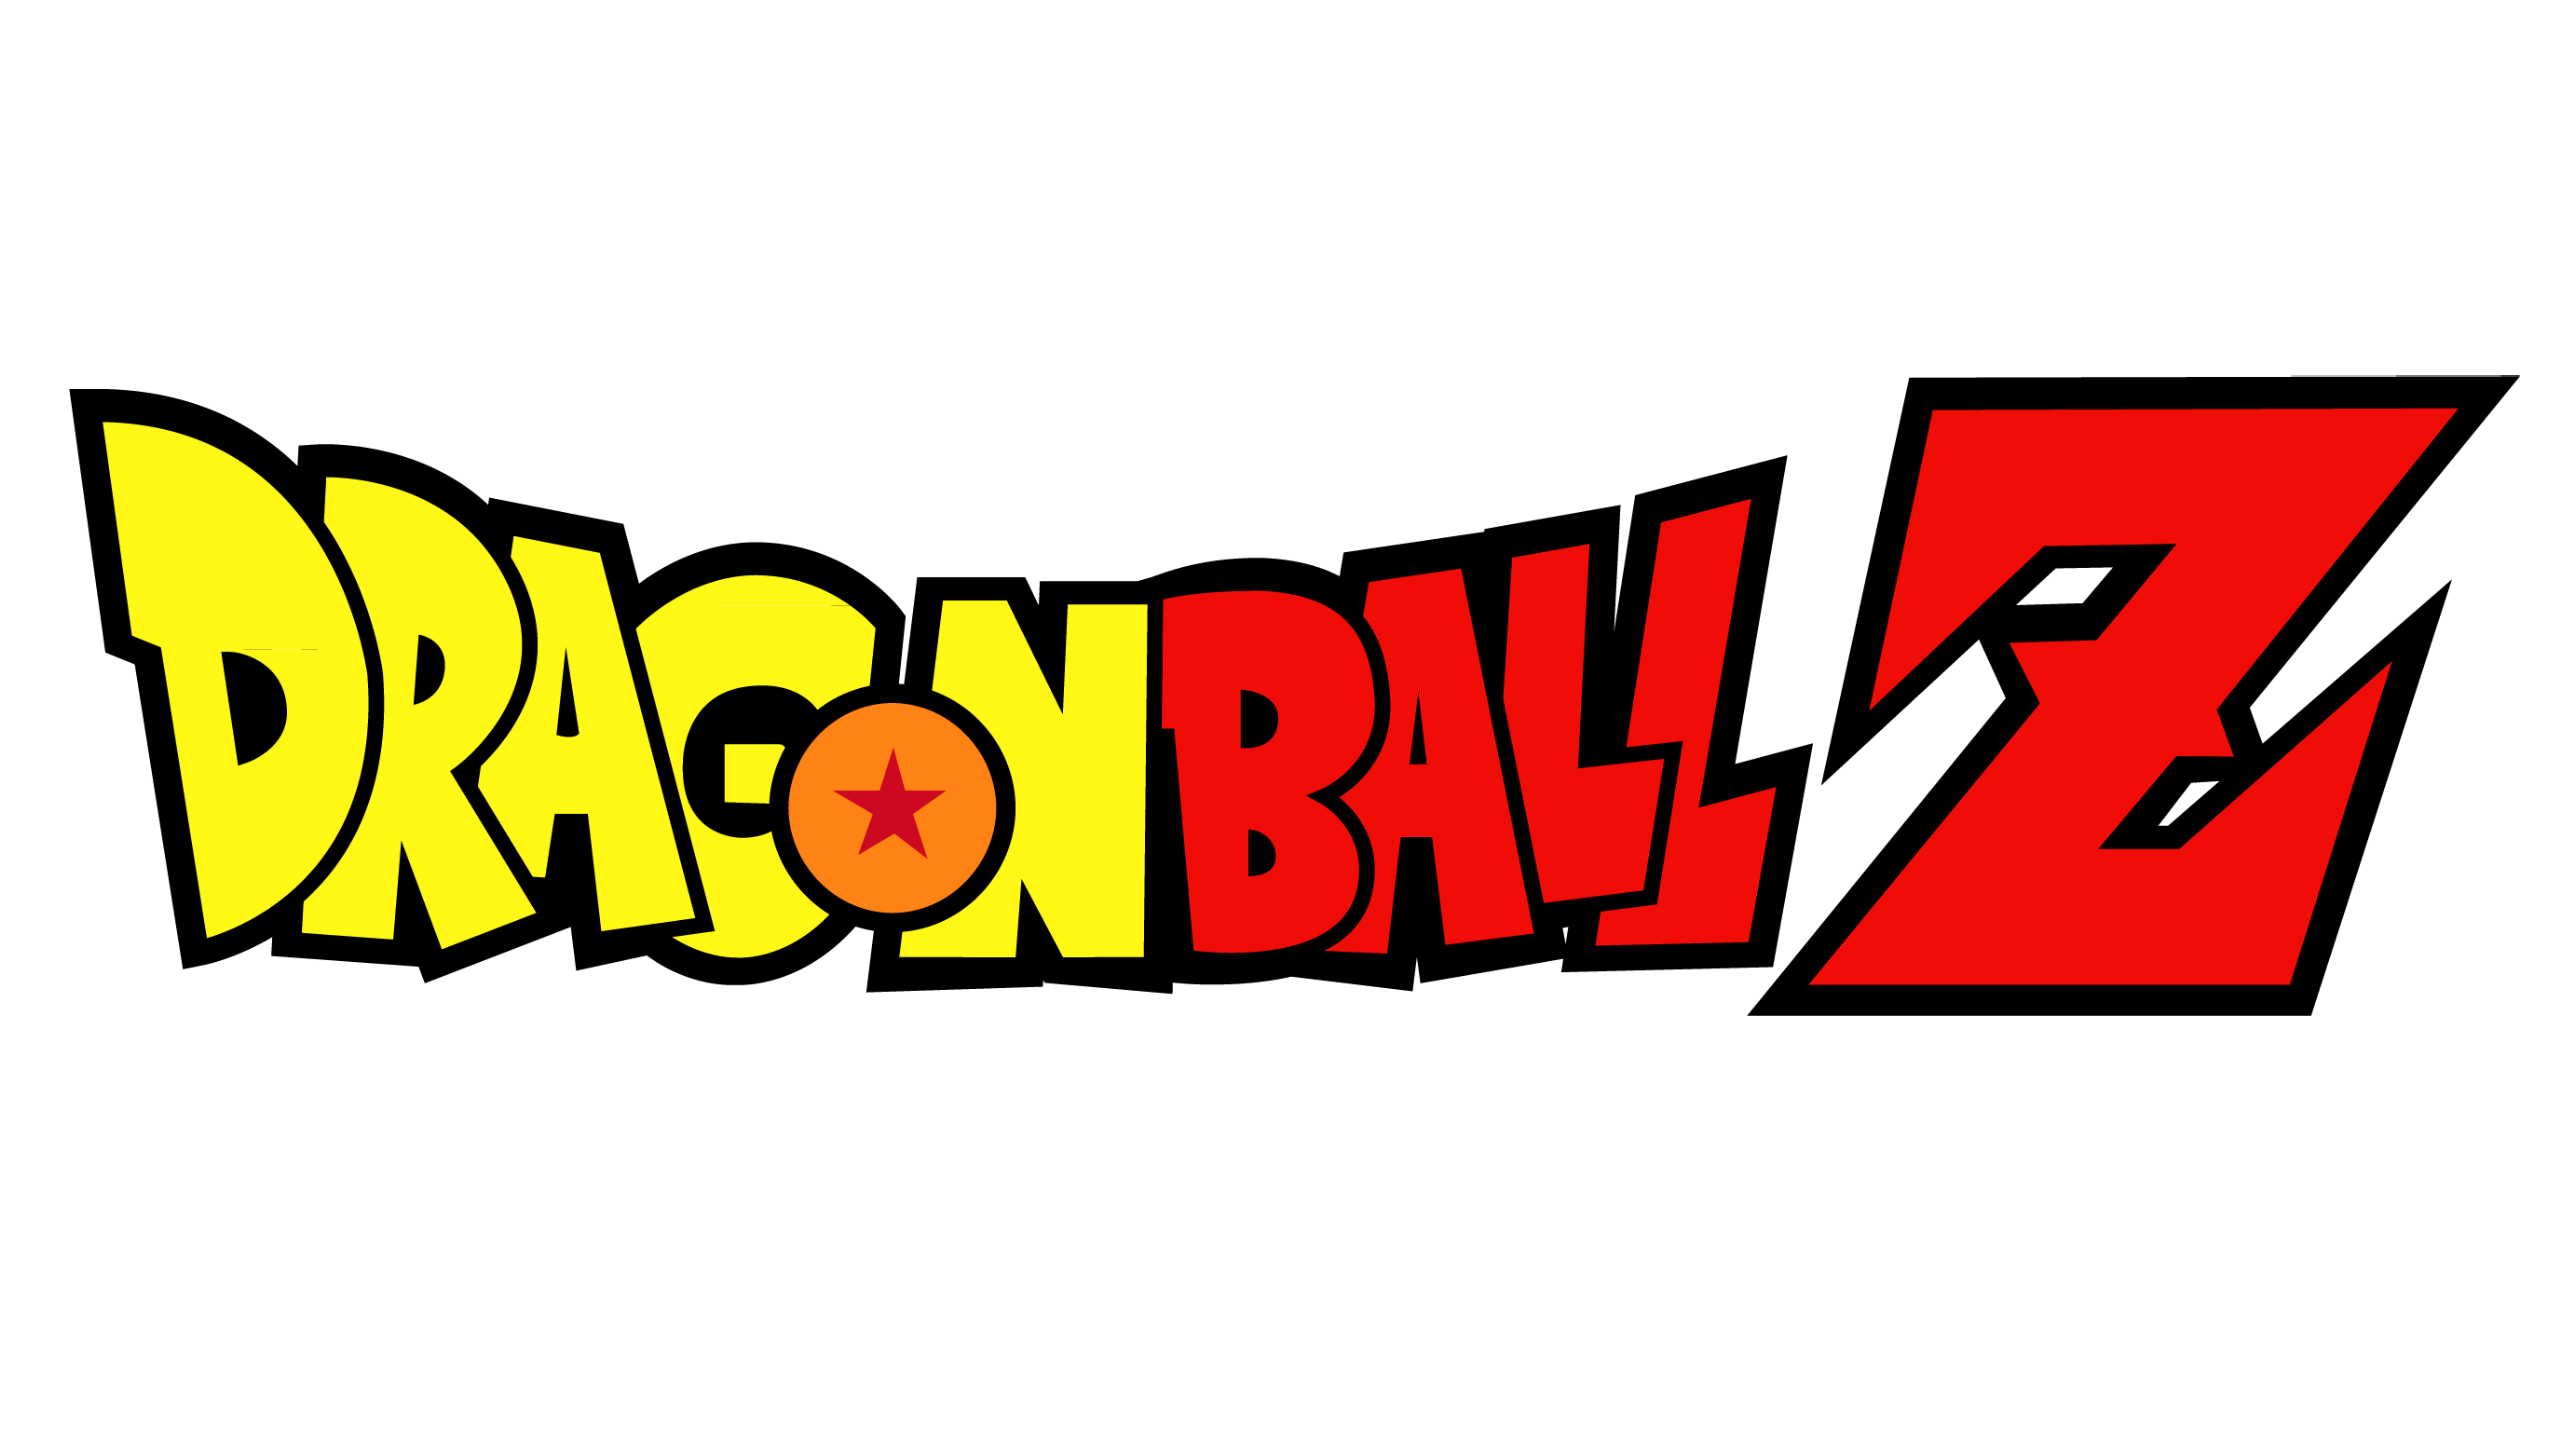 dragon ball z logo